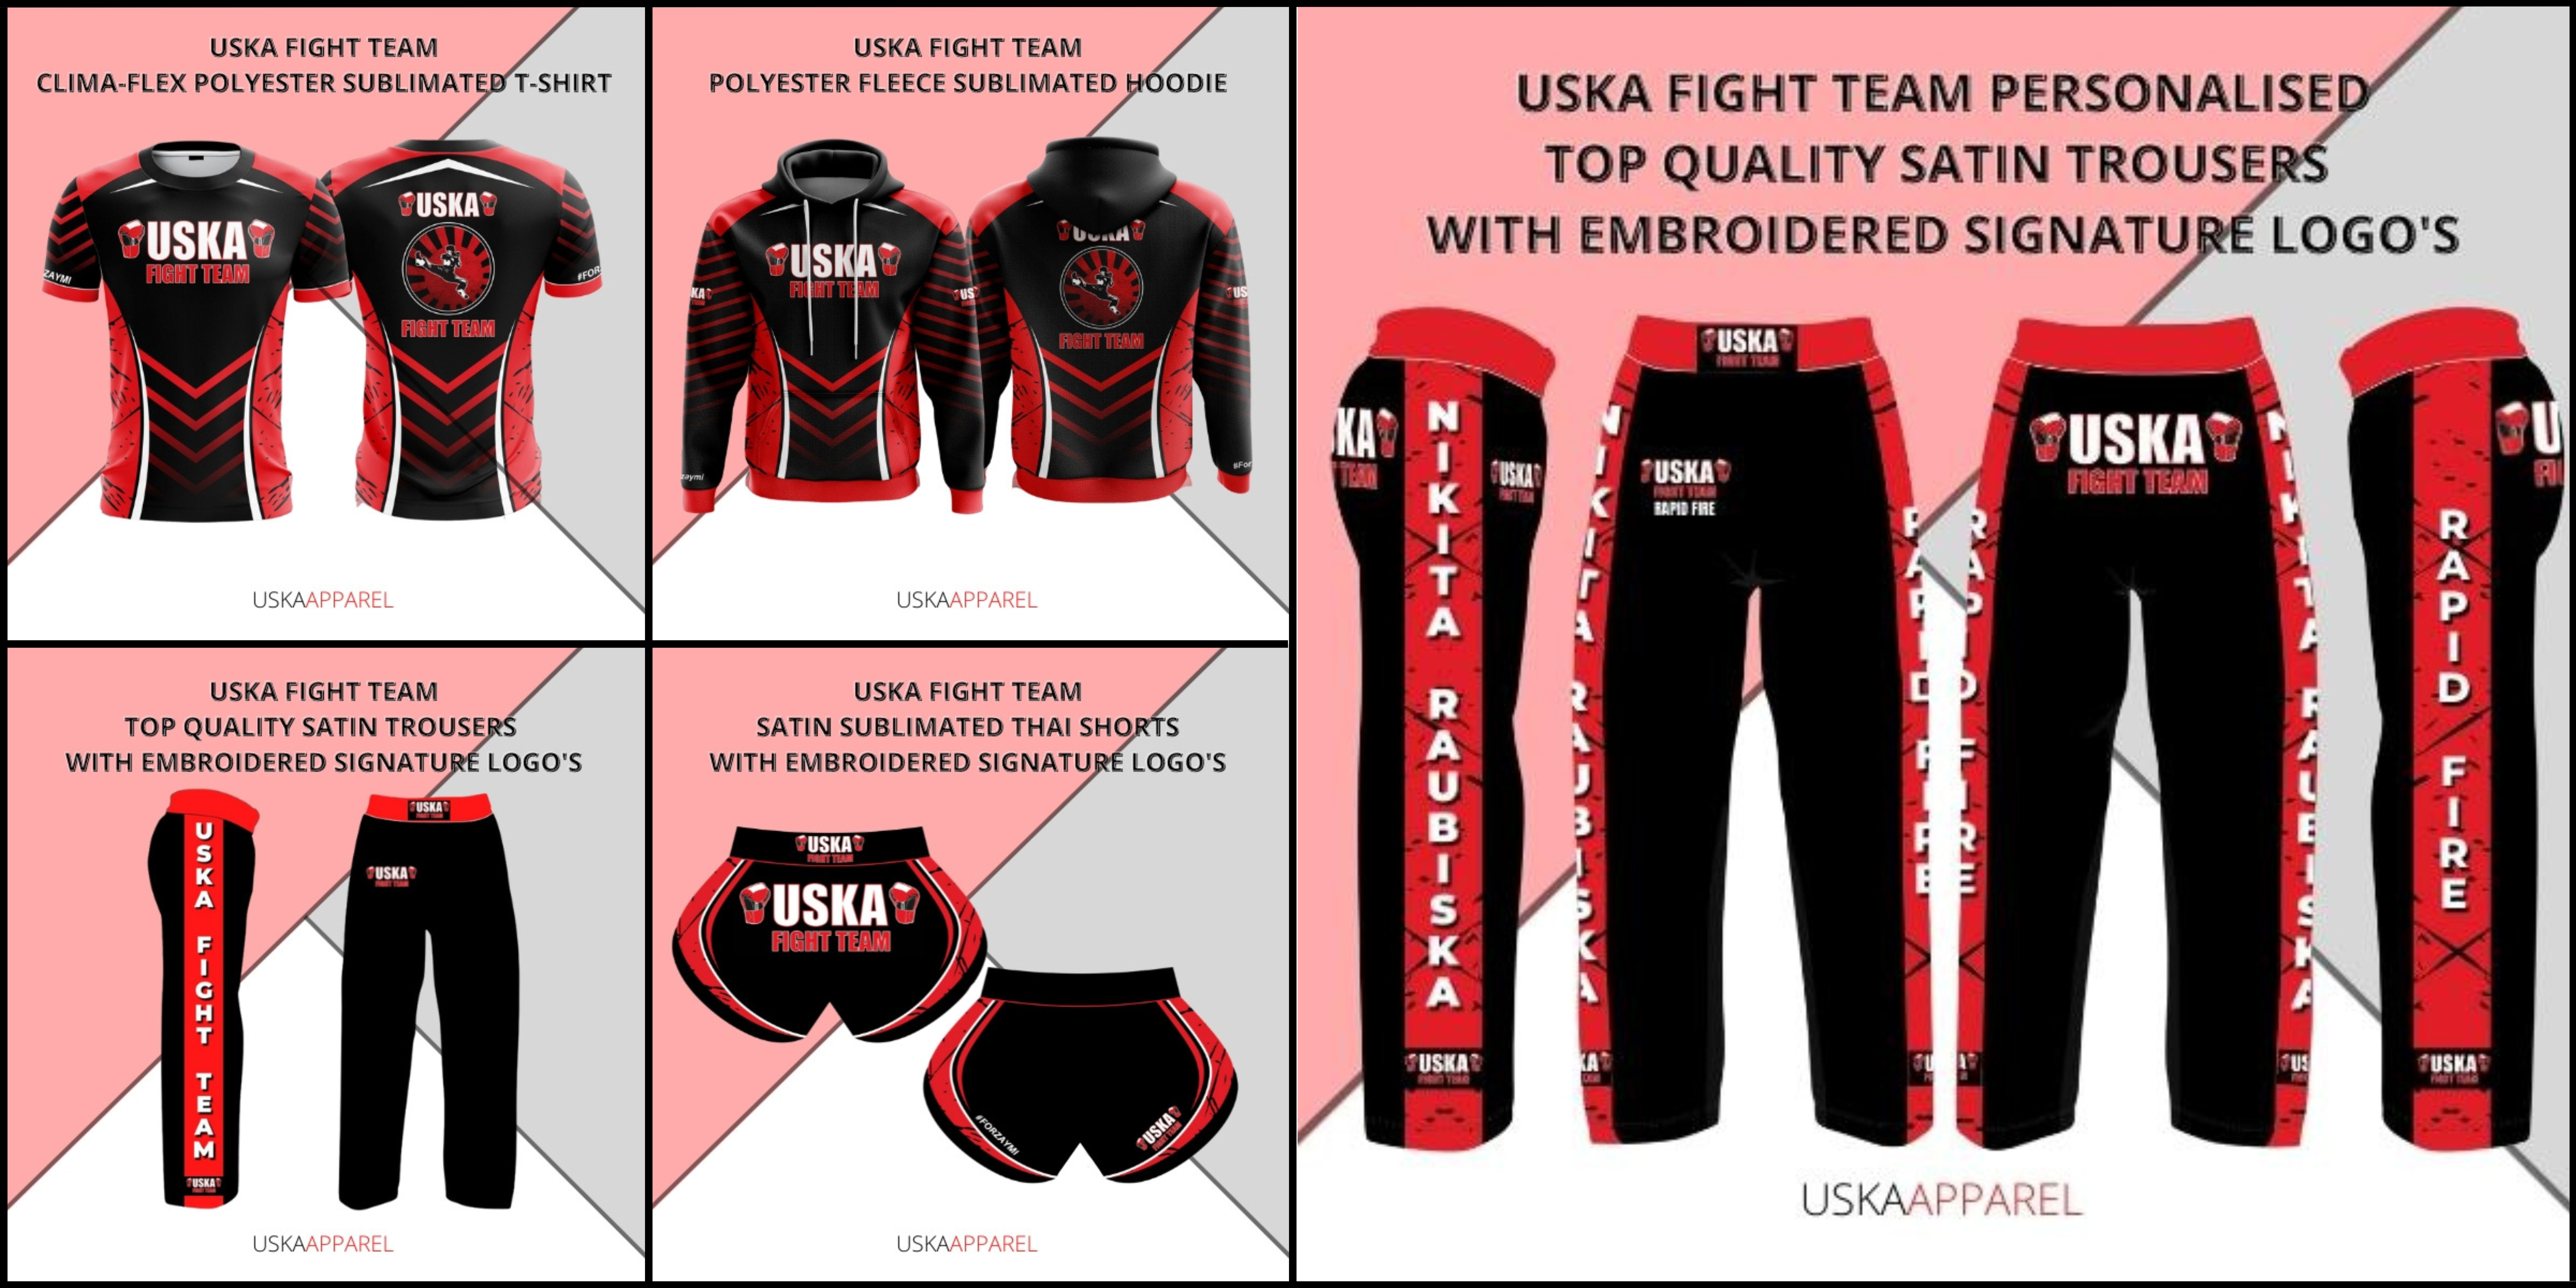 02-03-23 - New USKA Apparel for the USKA Fight Factory